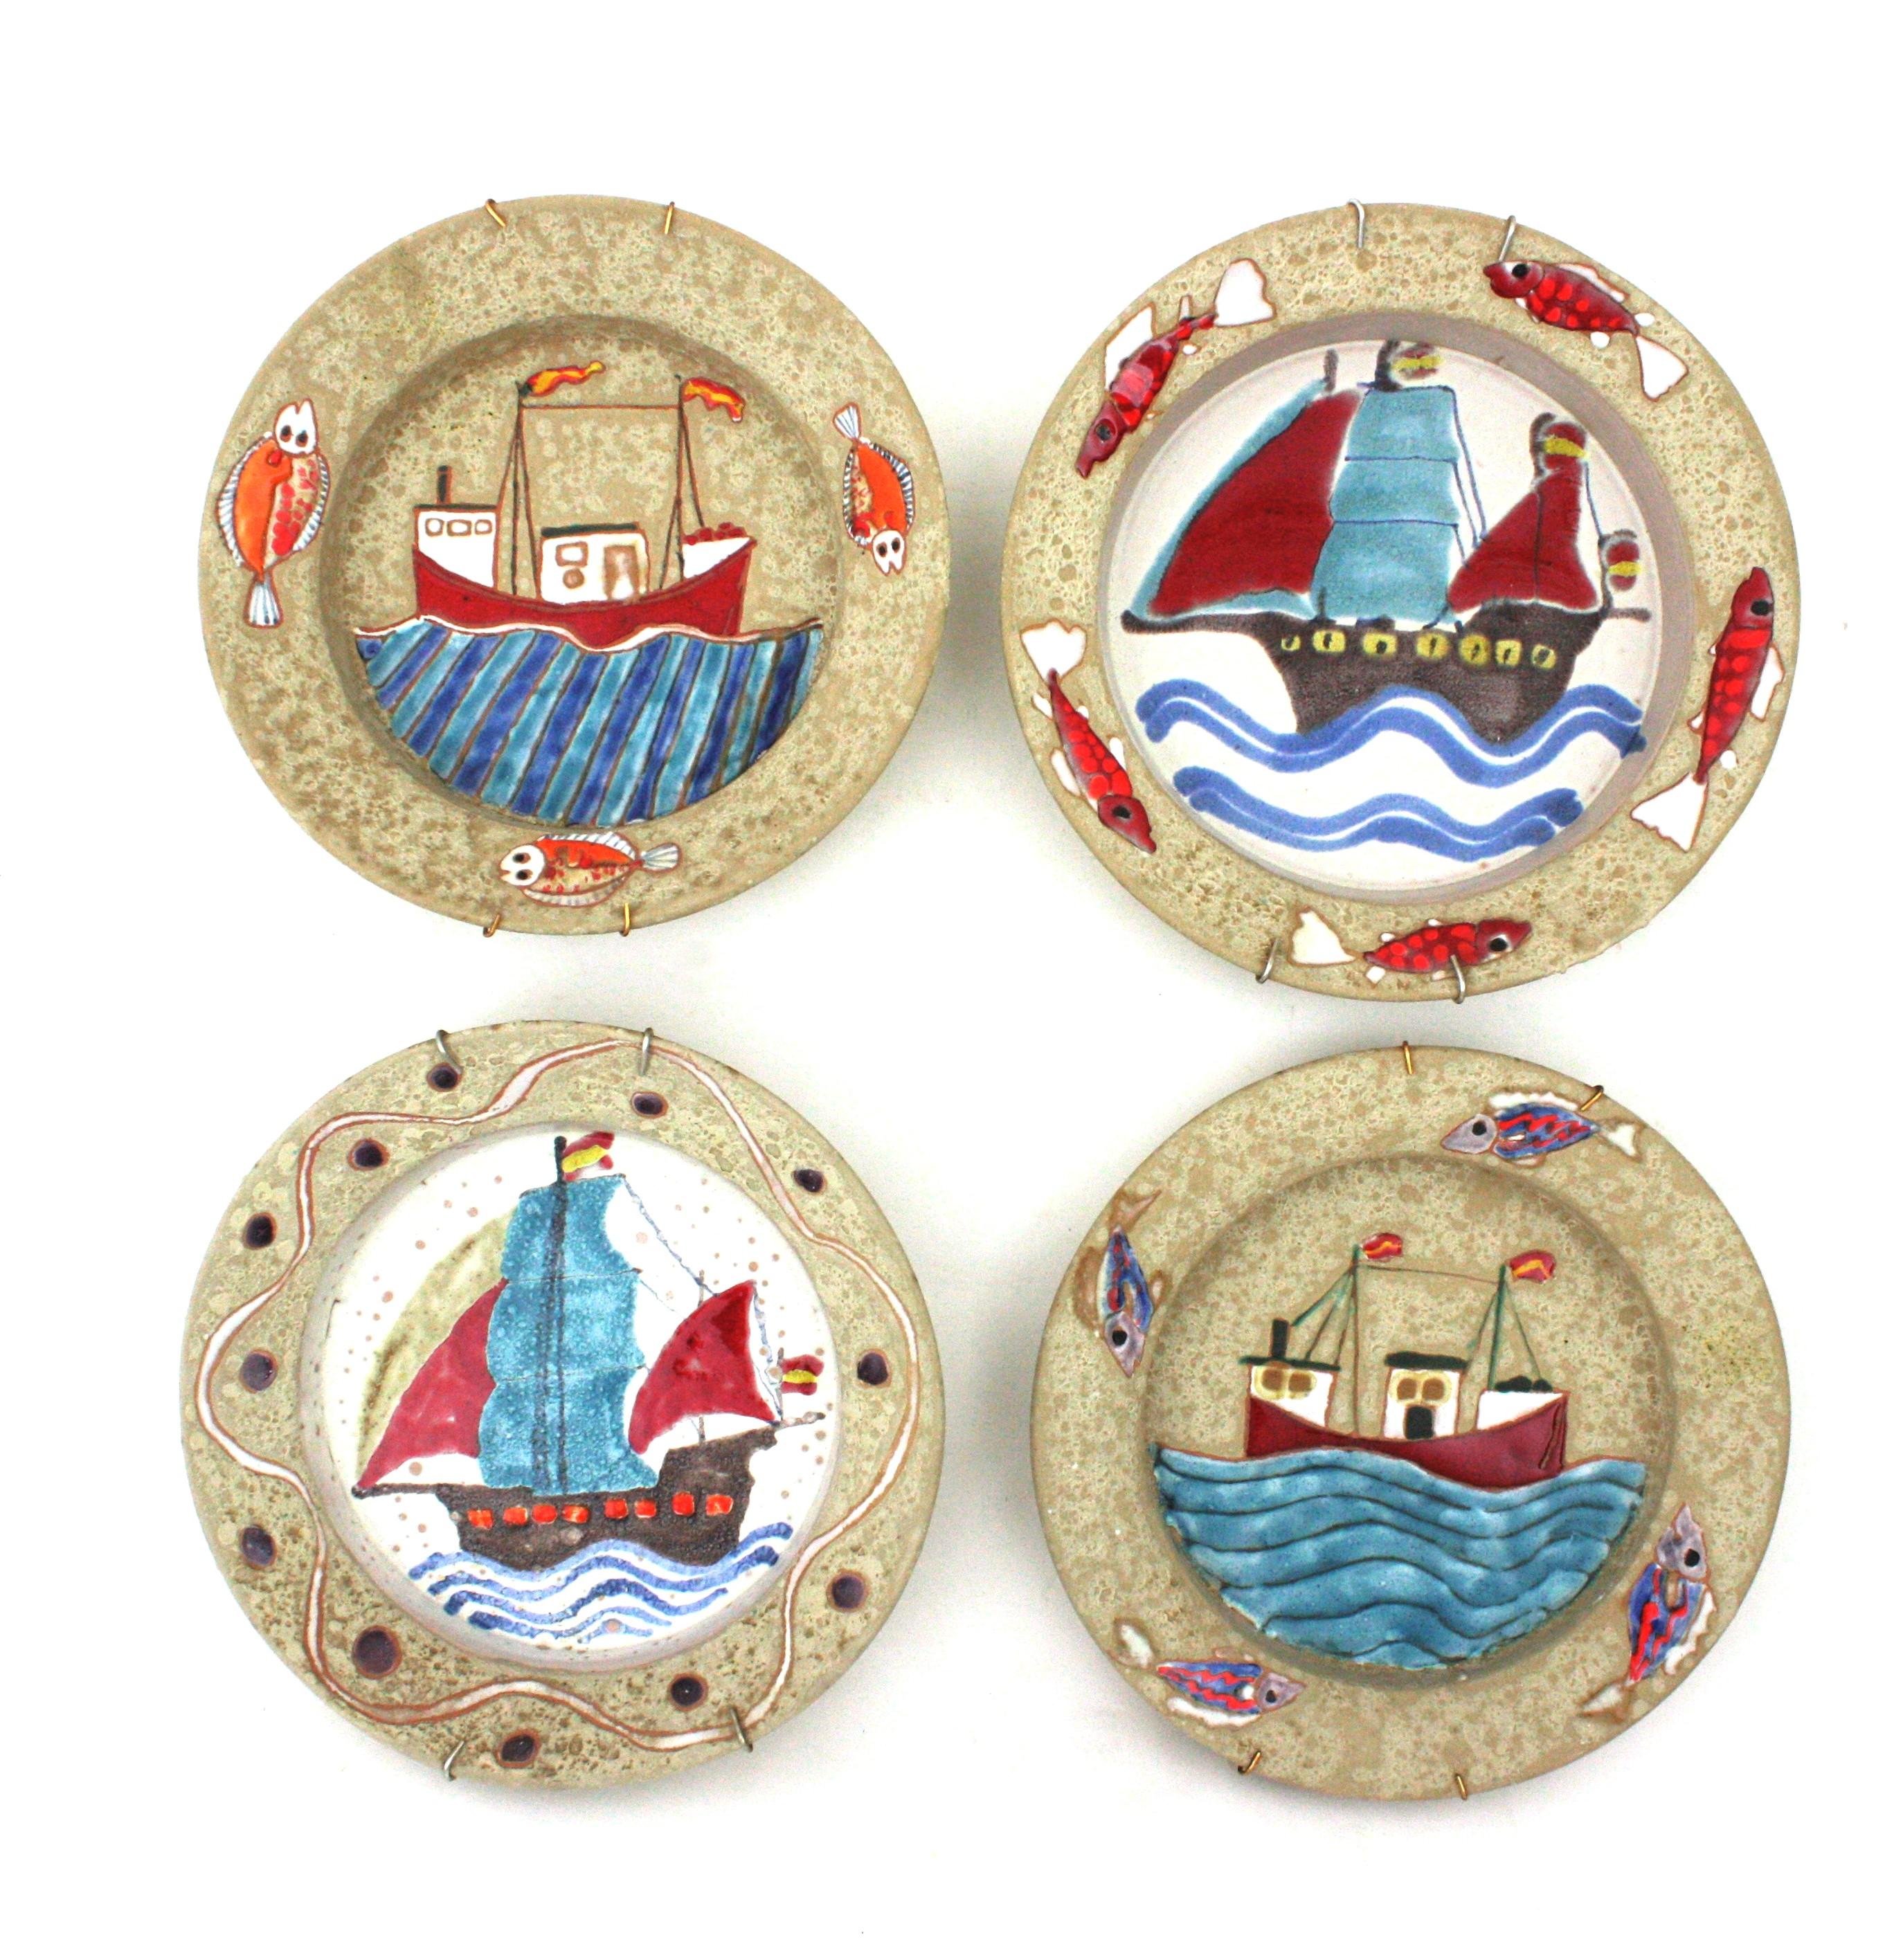 Wanddekoration mit maritimen Wandtellern, Terrakotta, Keramik, glasiert
Satz von vier glasierten Keramiktellern mit Segelschiffen und Marinedekoren, Spanien, 1970er Jahre.
Handbemalte Wandteller aus Terrakotta mit glasierter Keramikoberfläche. Jedes